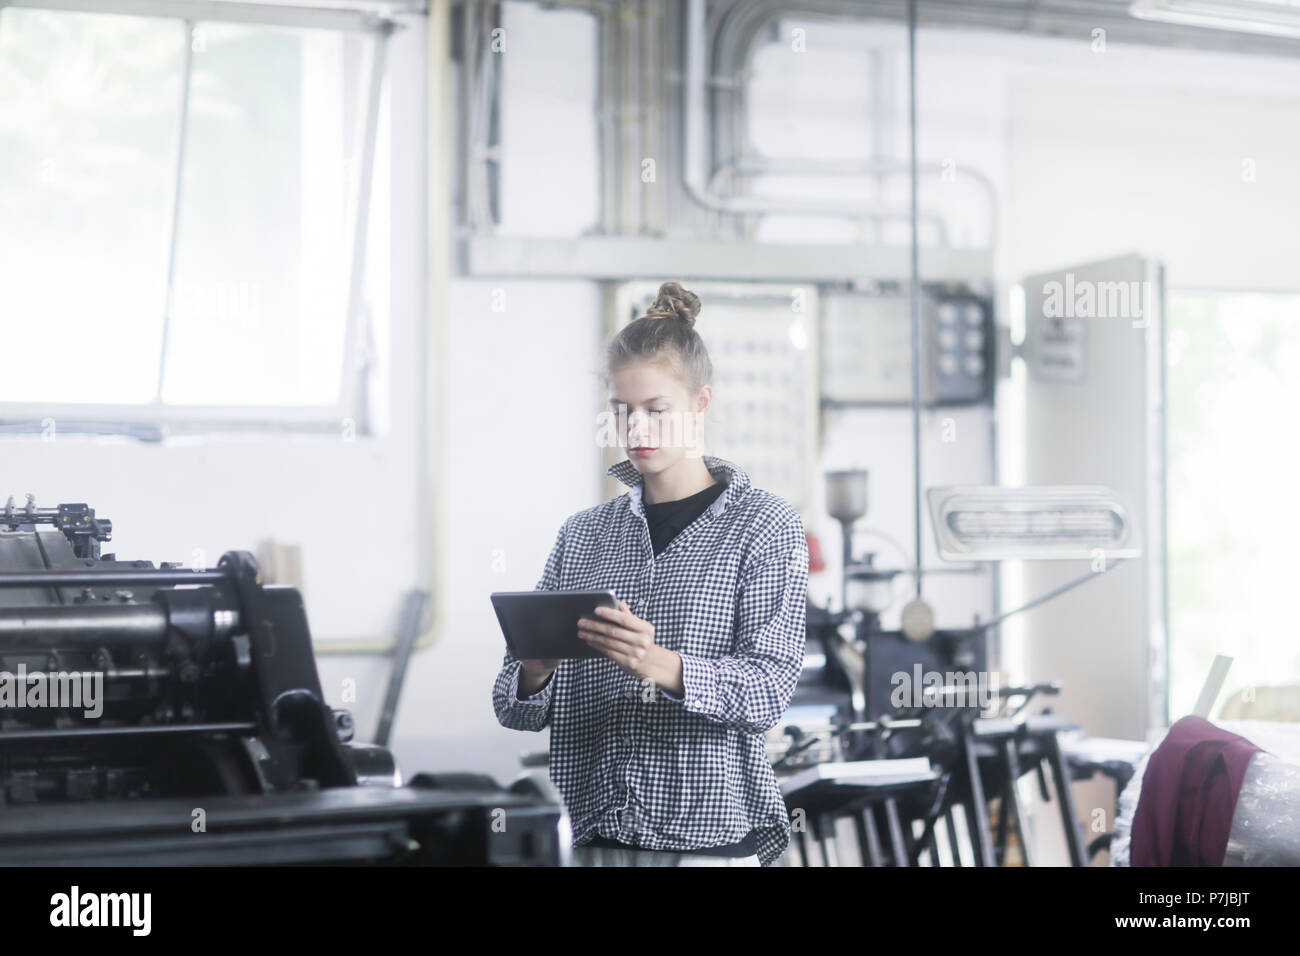 Femme debout dans un atelier à l'aide d'une tablette numérique Banque D'Images